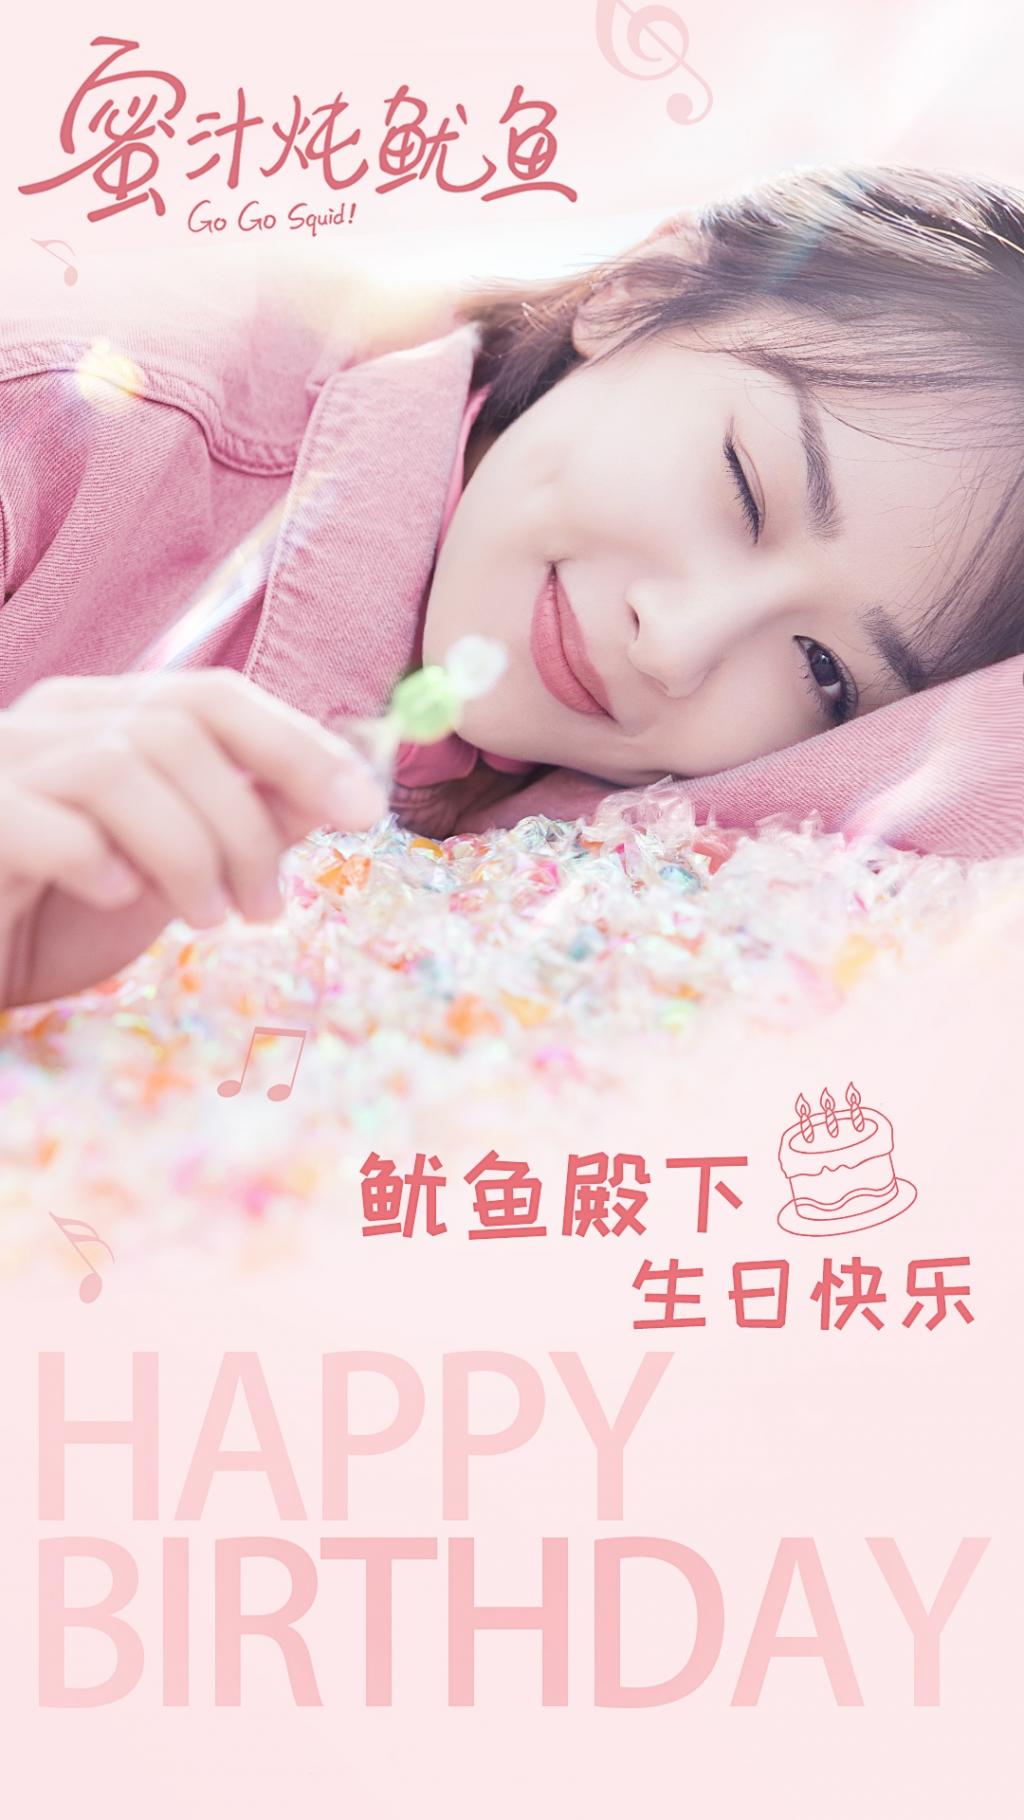 青春励志言情剧《亲爱的,热爱的》杨紫甜美生日祝福海报